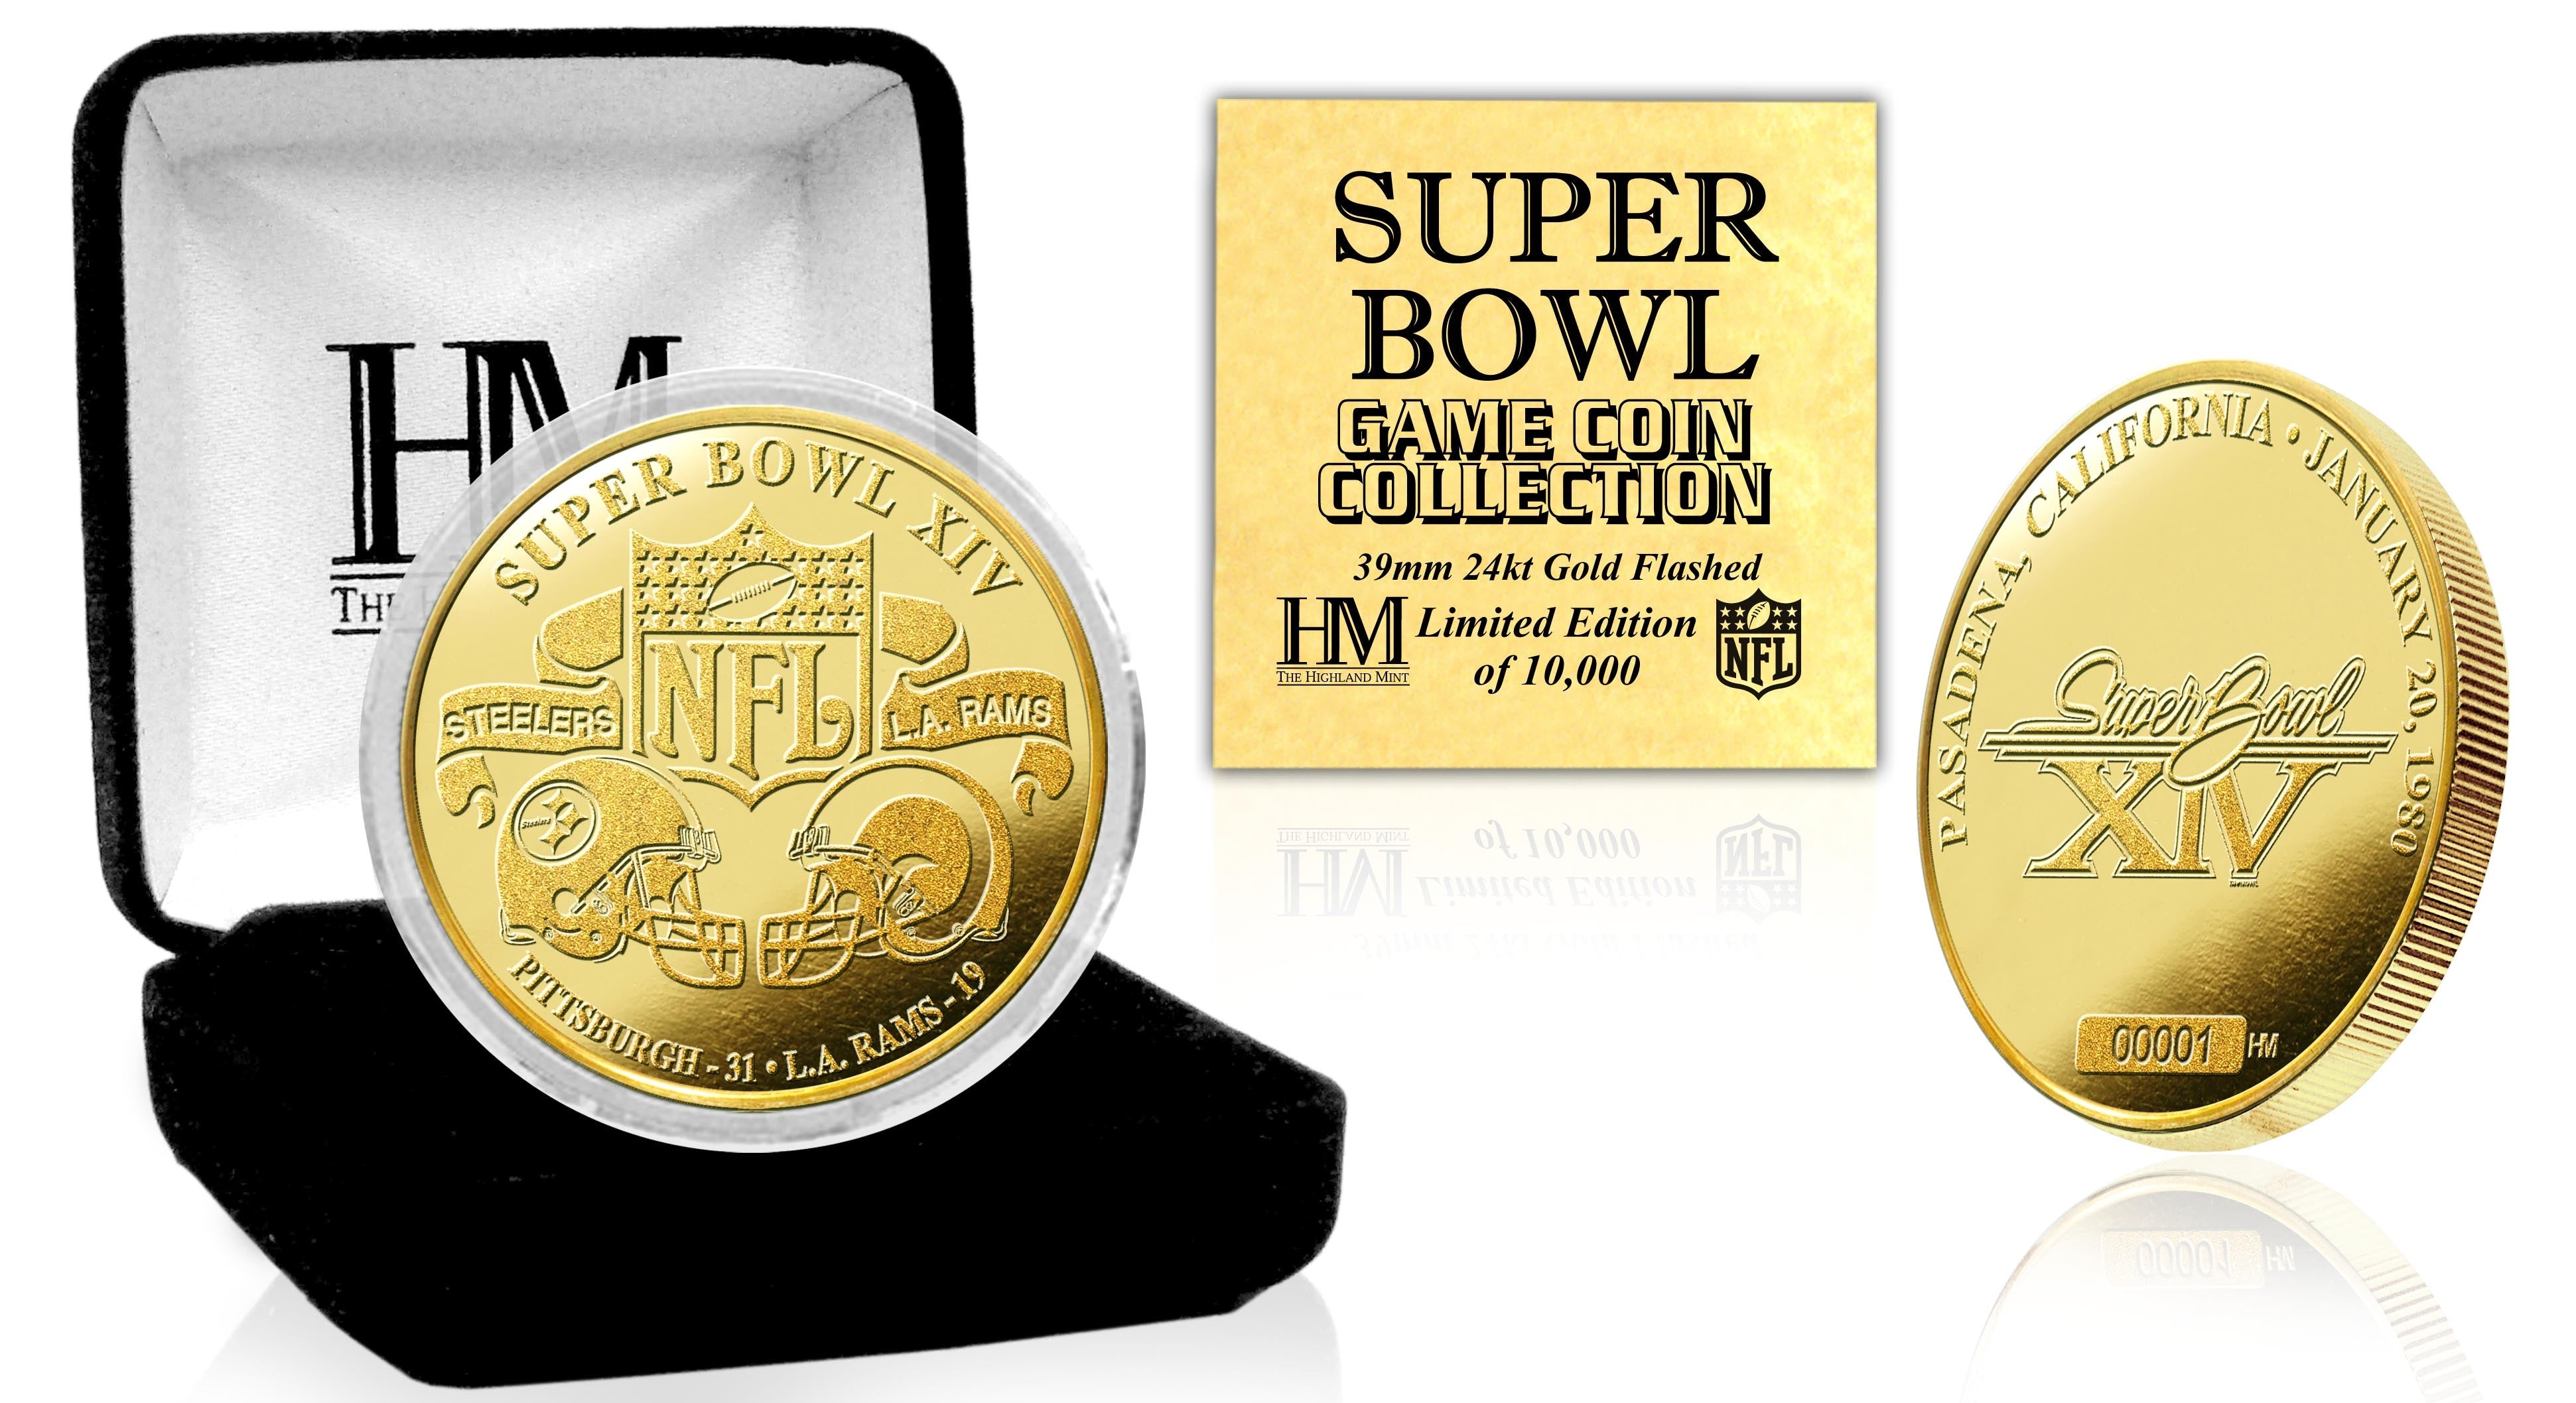 Super Bowl XIV 24kt Gold Flip Coin